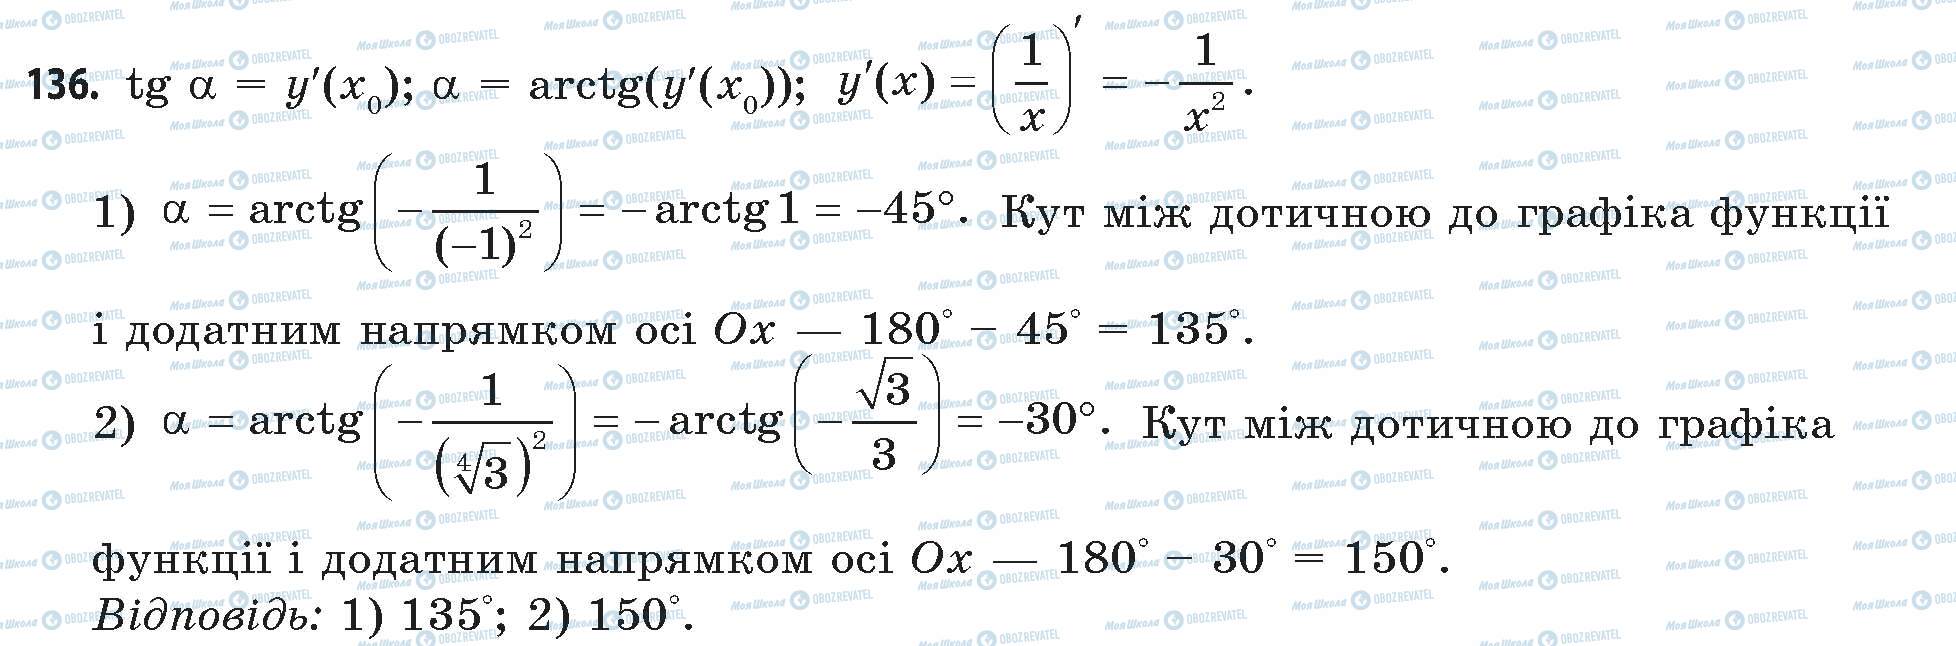 ГДЗ Математика 11 класс страница 136